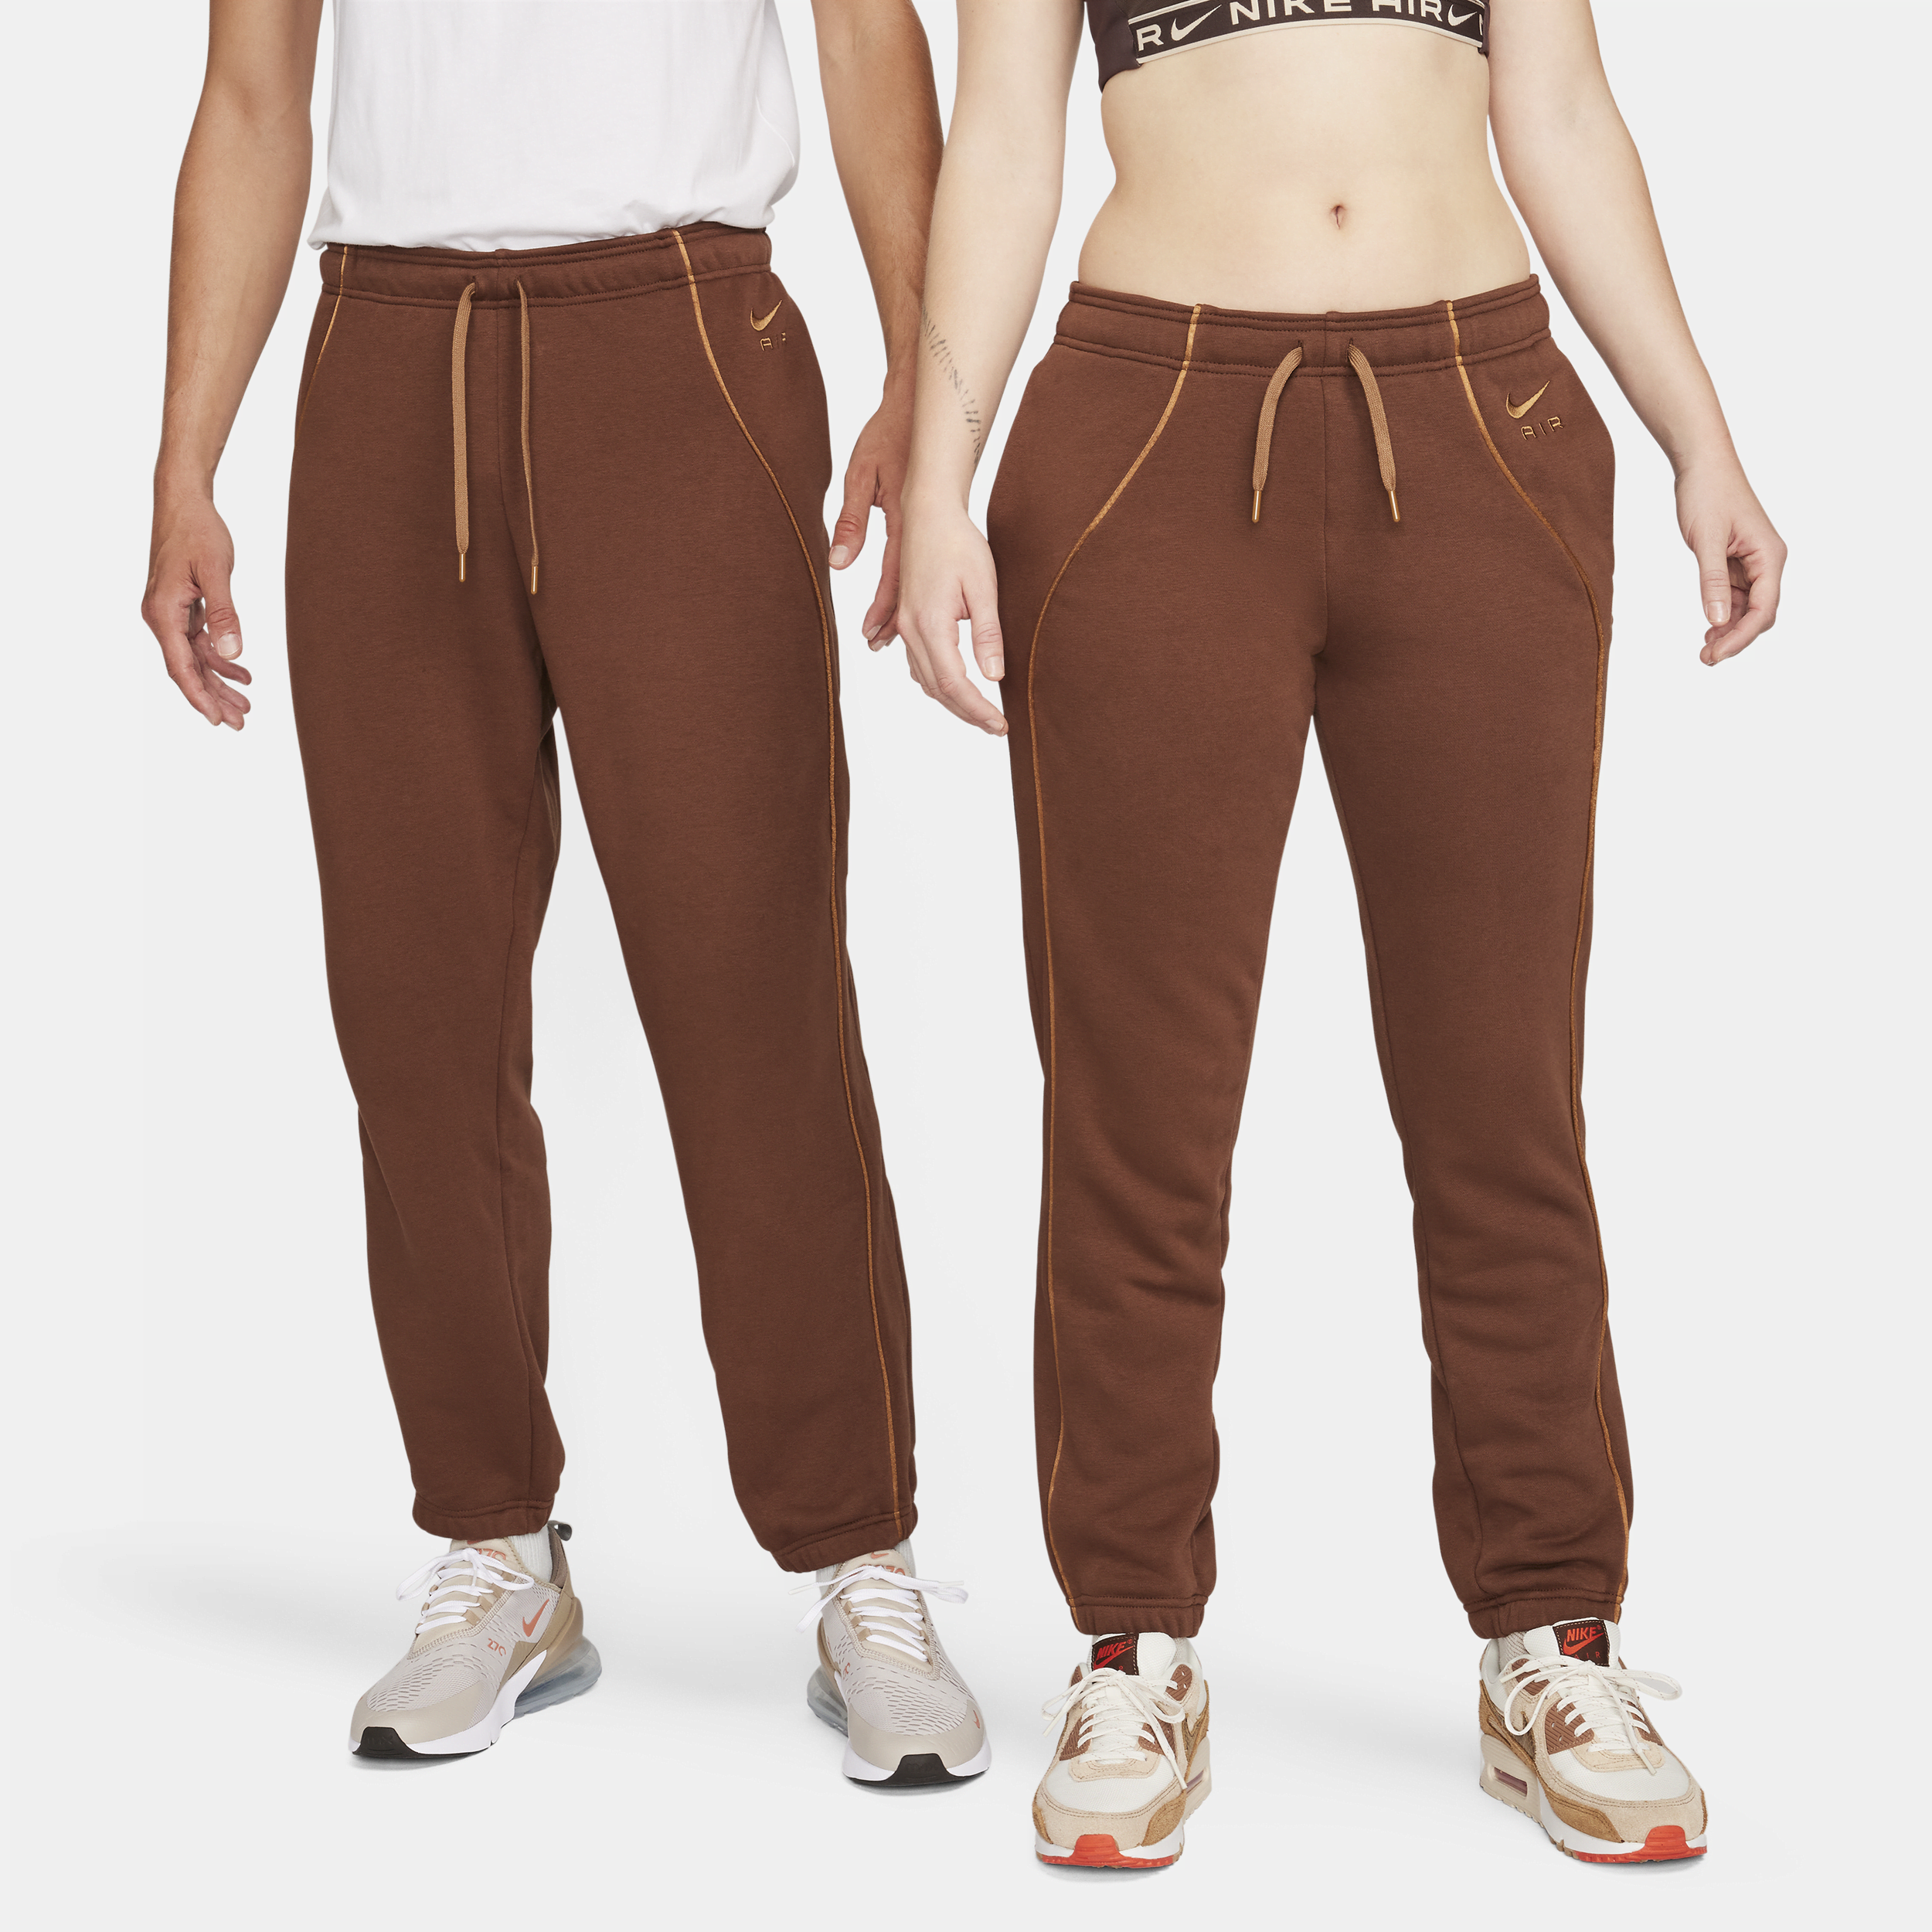 Nike Air Fleece joggingbroek met halfhoge taille voor dames - Bruin